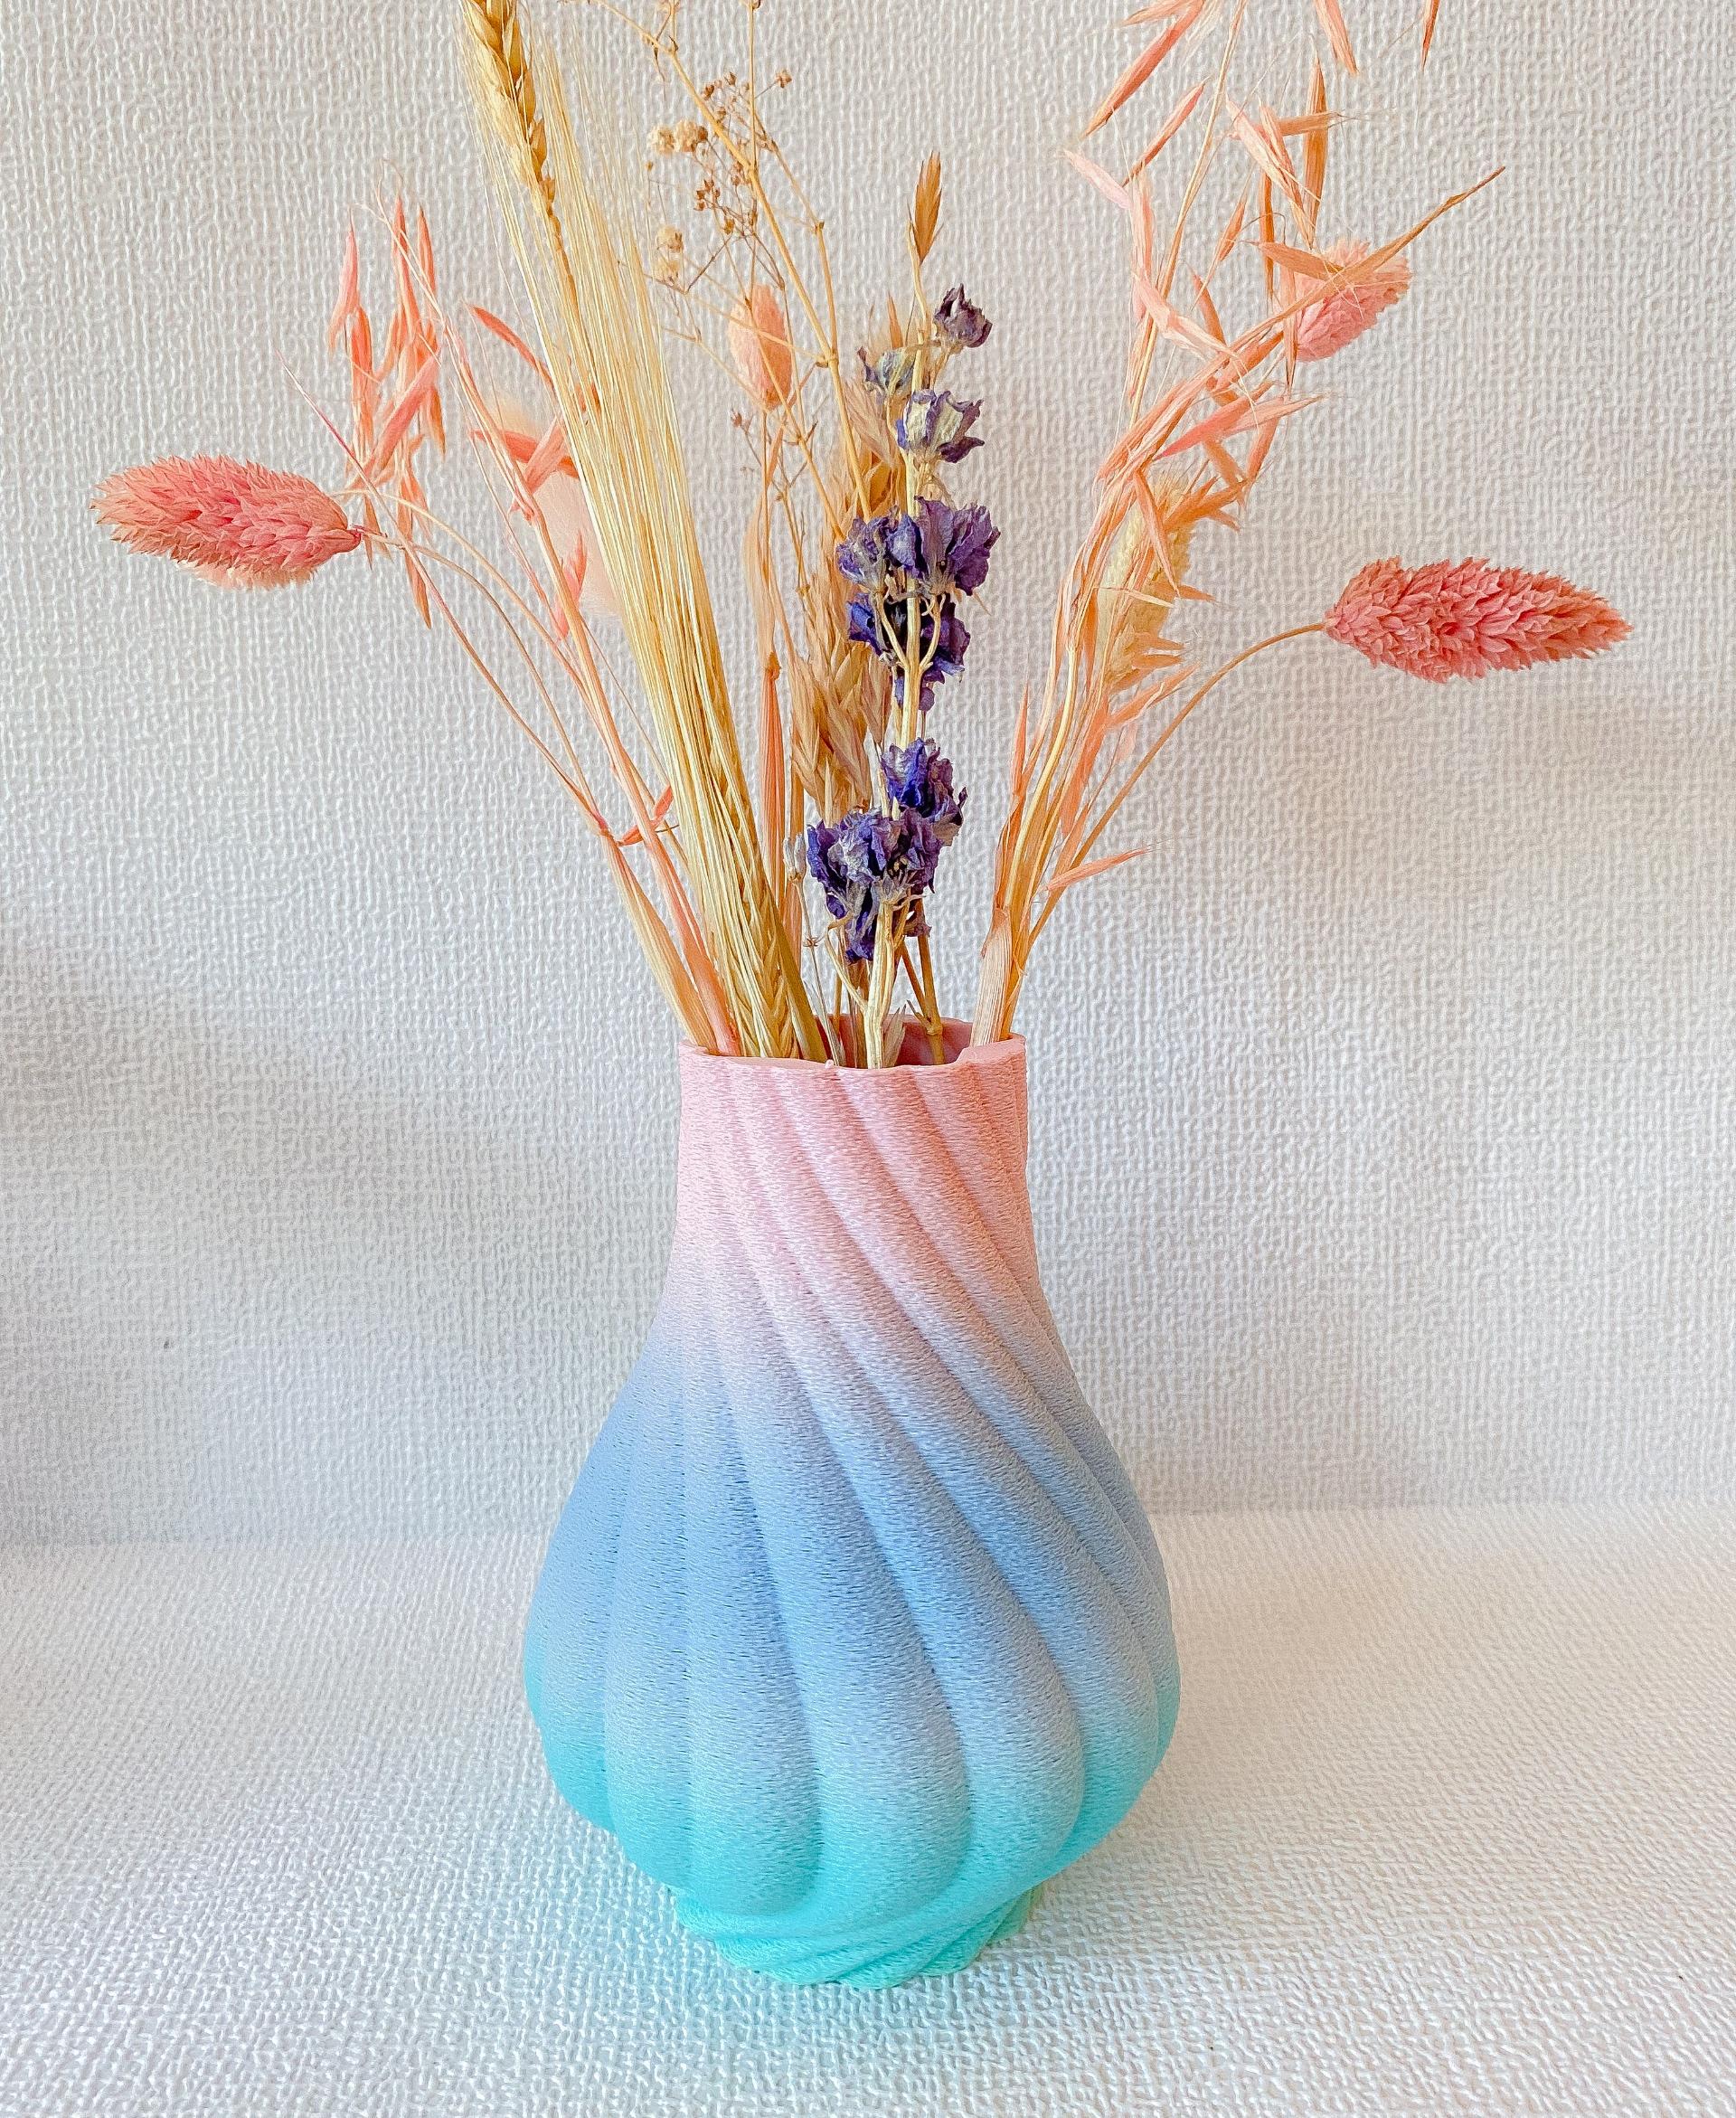 Vase 1.0.1.stl - Beautiful vase in fuzzy skin! - 3d model